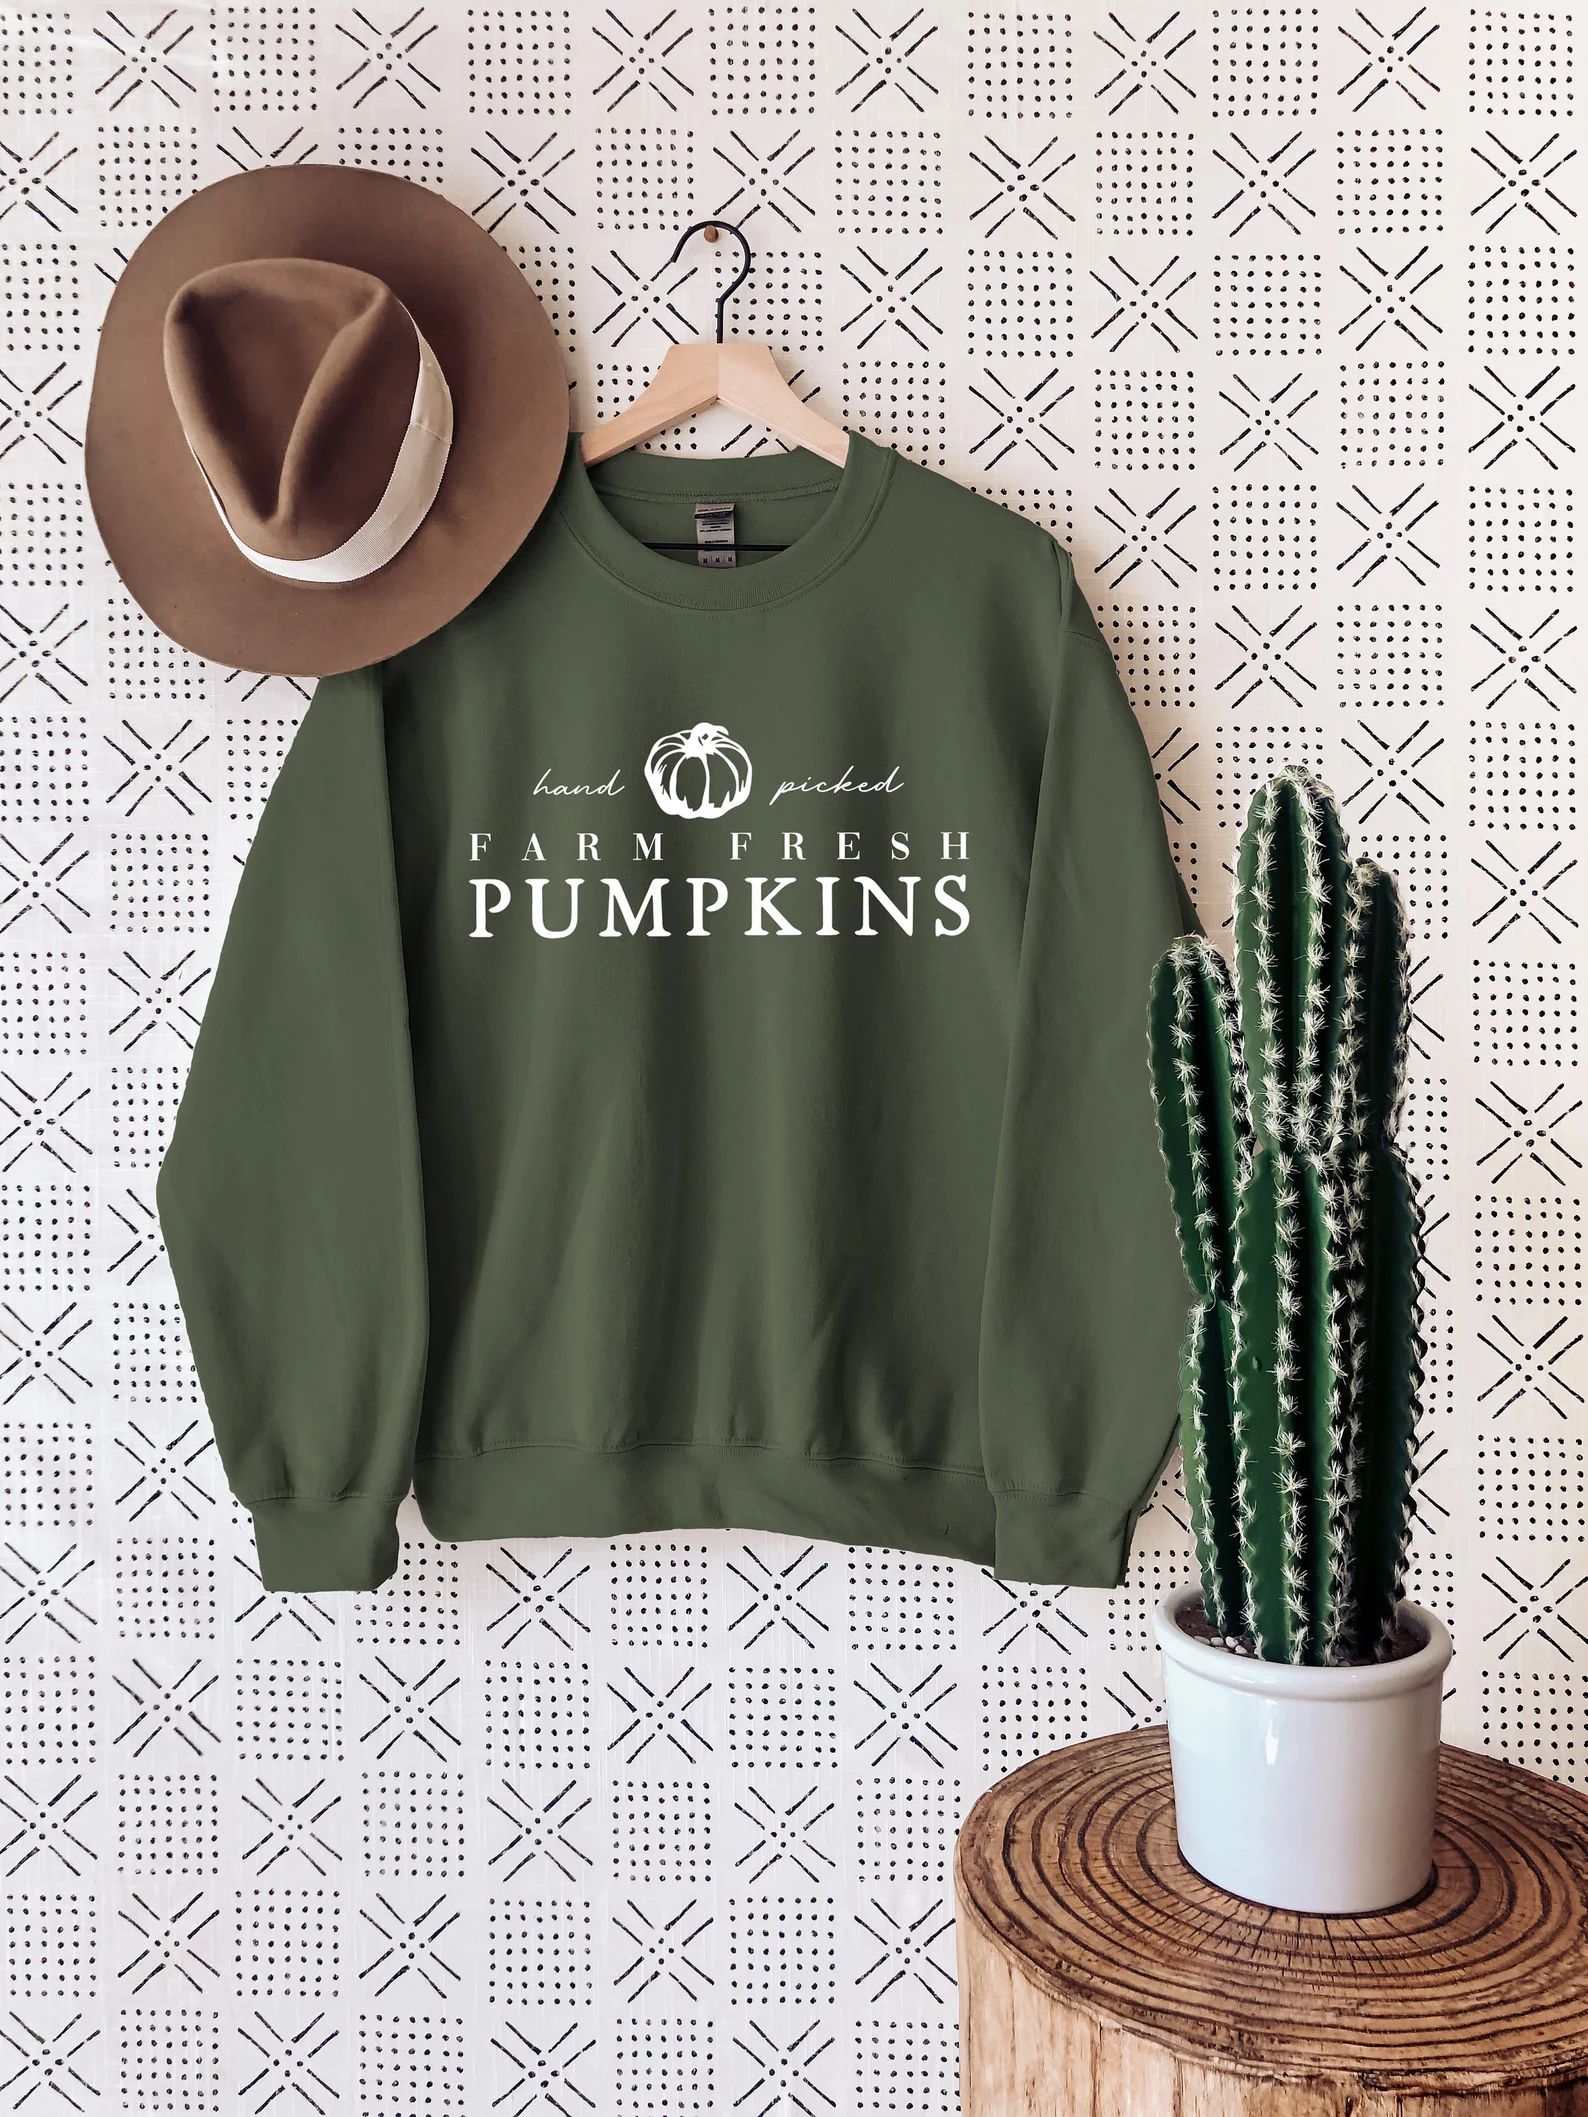 Hand Picked Farm Fresh Pumpkins Sweatshirt, Halloween Sweatshirt, Pumpkin Season Sweatshirt, Fall... | Etsy (US)